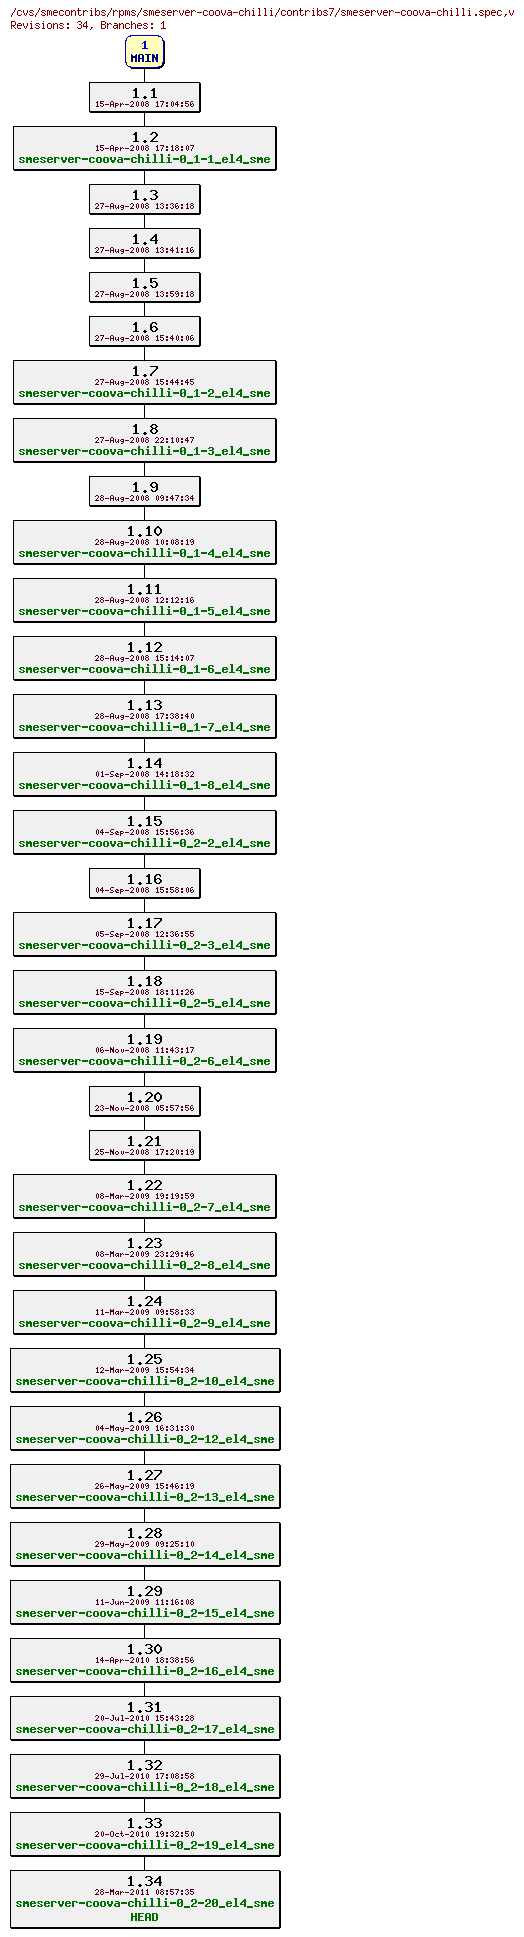 Revisions of rpms/smeserver-coova-chilli/contribs7/smeserver-coova-chilli.spec